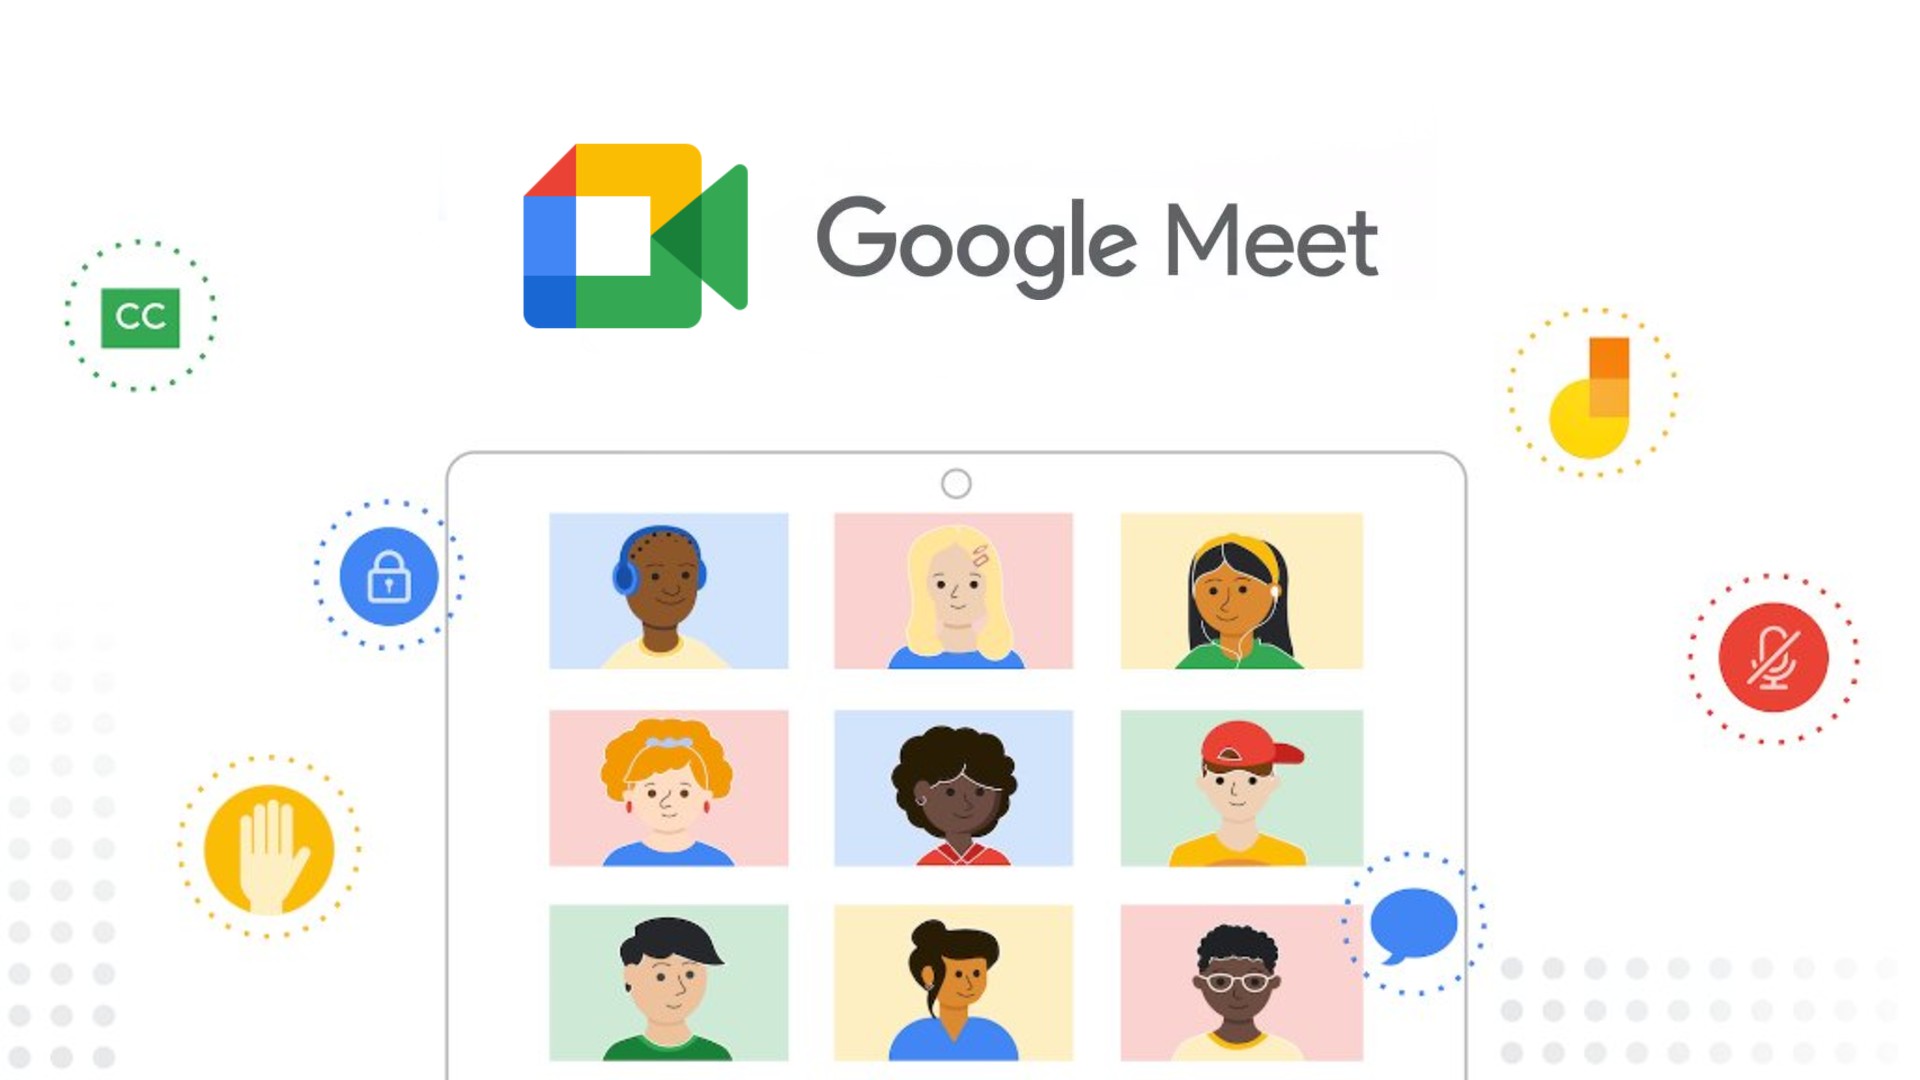 Les abonnés individuels peuvent désormais utiliser les fonctions d'appel vidéo premium de Google Meet